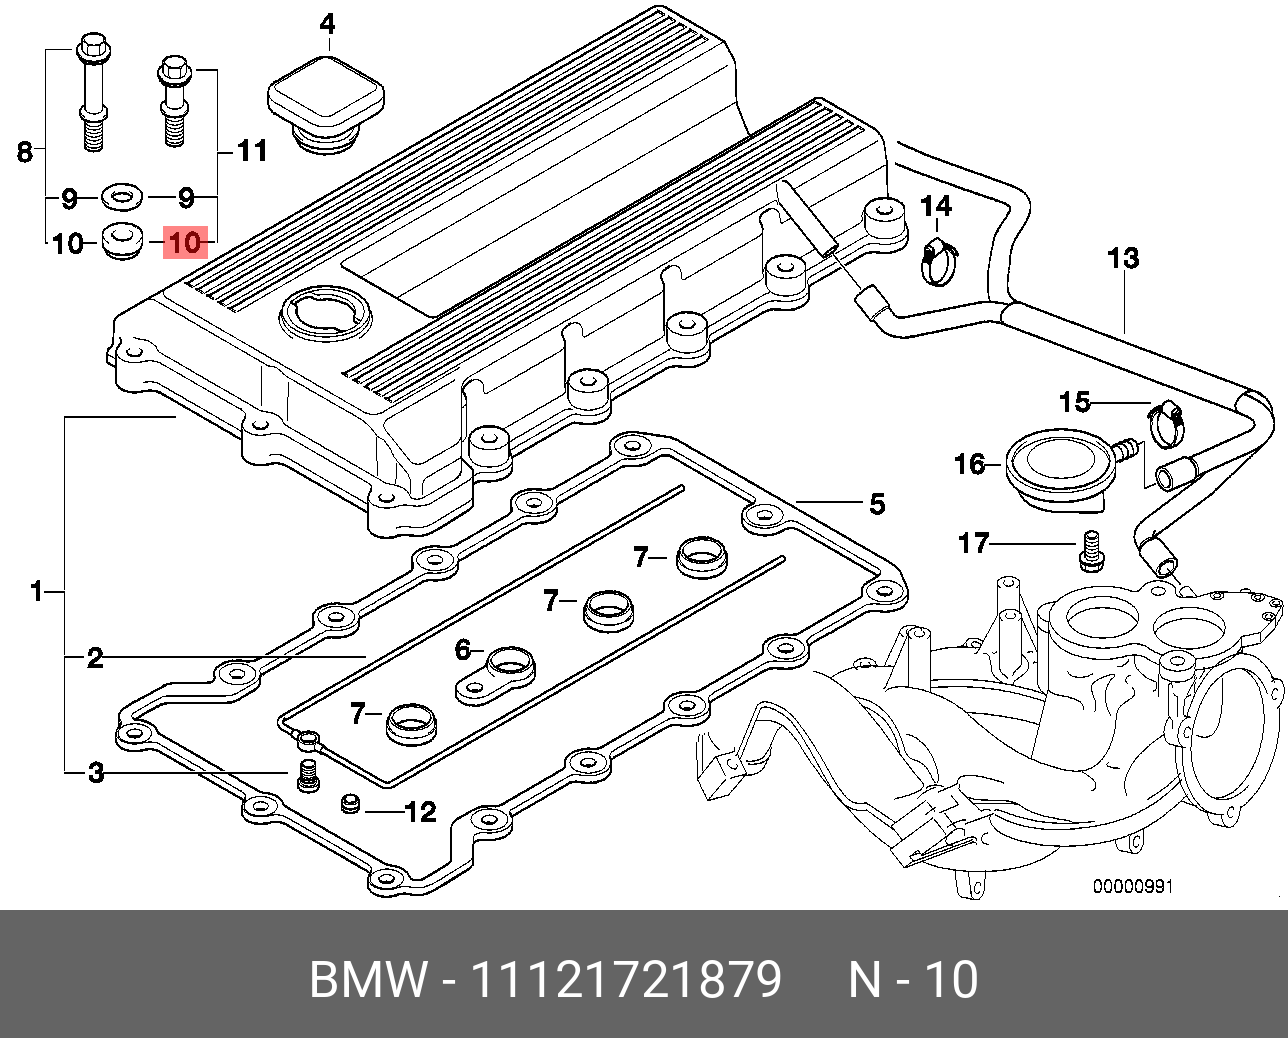 Прокладка под болты крышки головки блока цилиндров - BMW 11 12 1 721 879